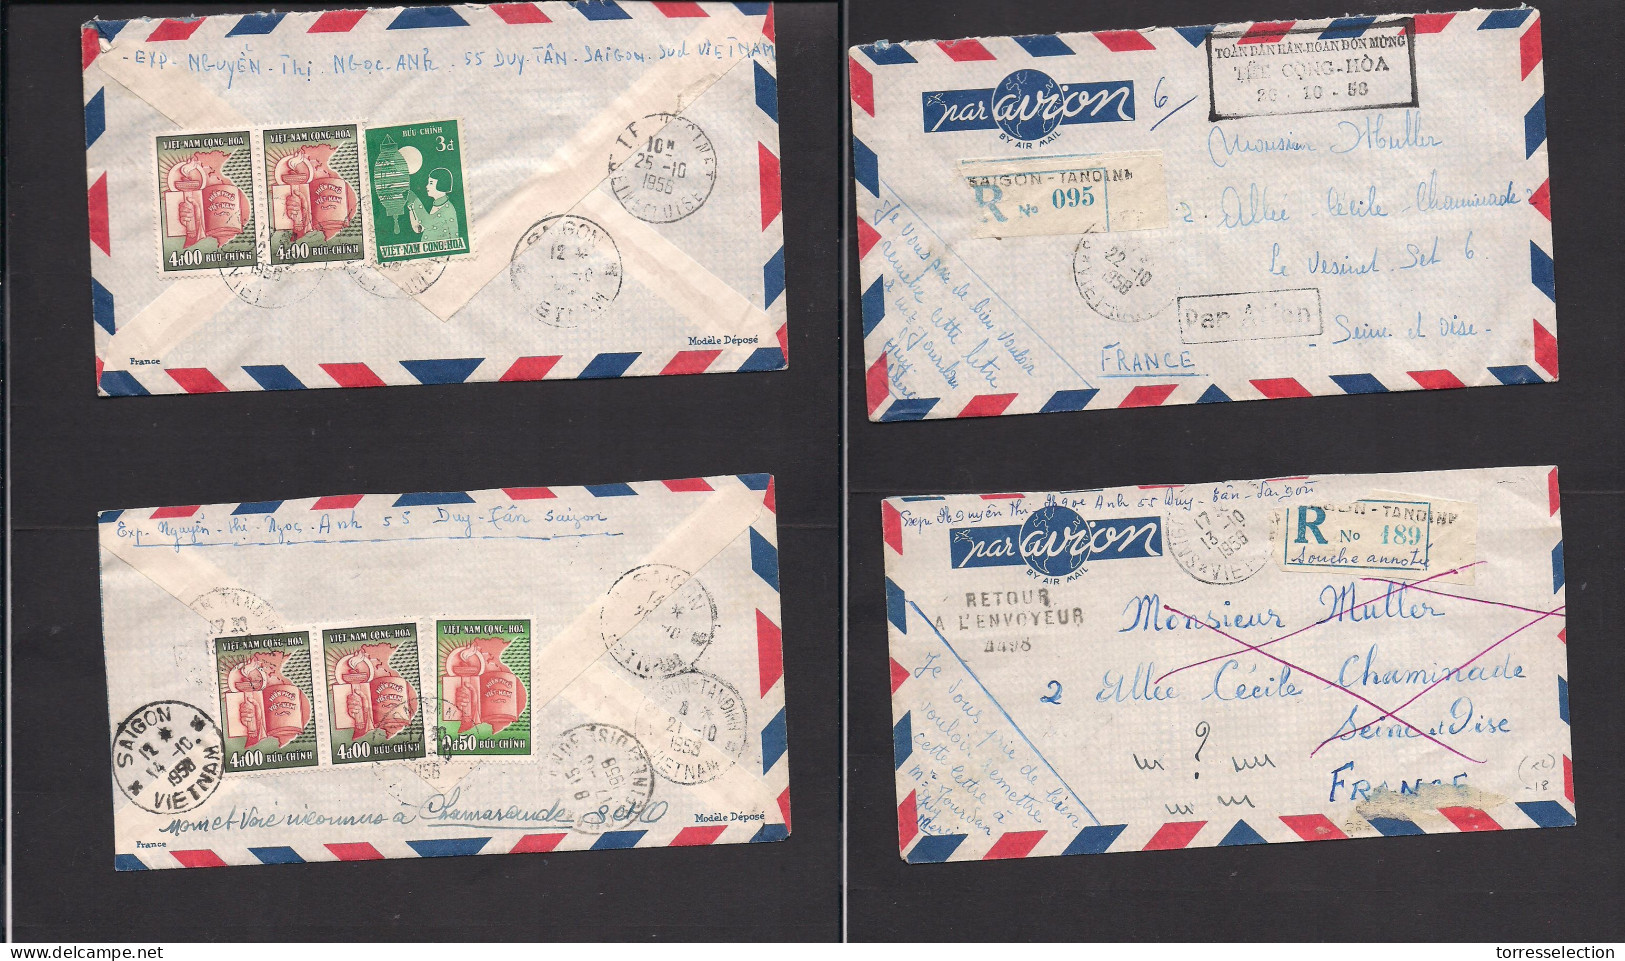 INDOCHINA. 1956. Vietnam. Saignon - France. 2 Airmails Reverse Multifkd Envelope. Fine Pair. XSALE. - Autres - Asie